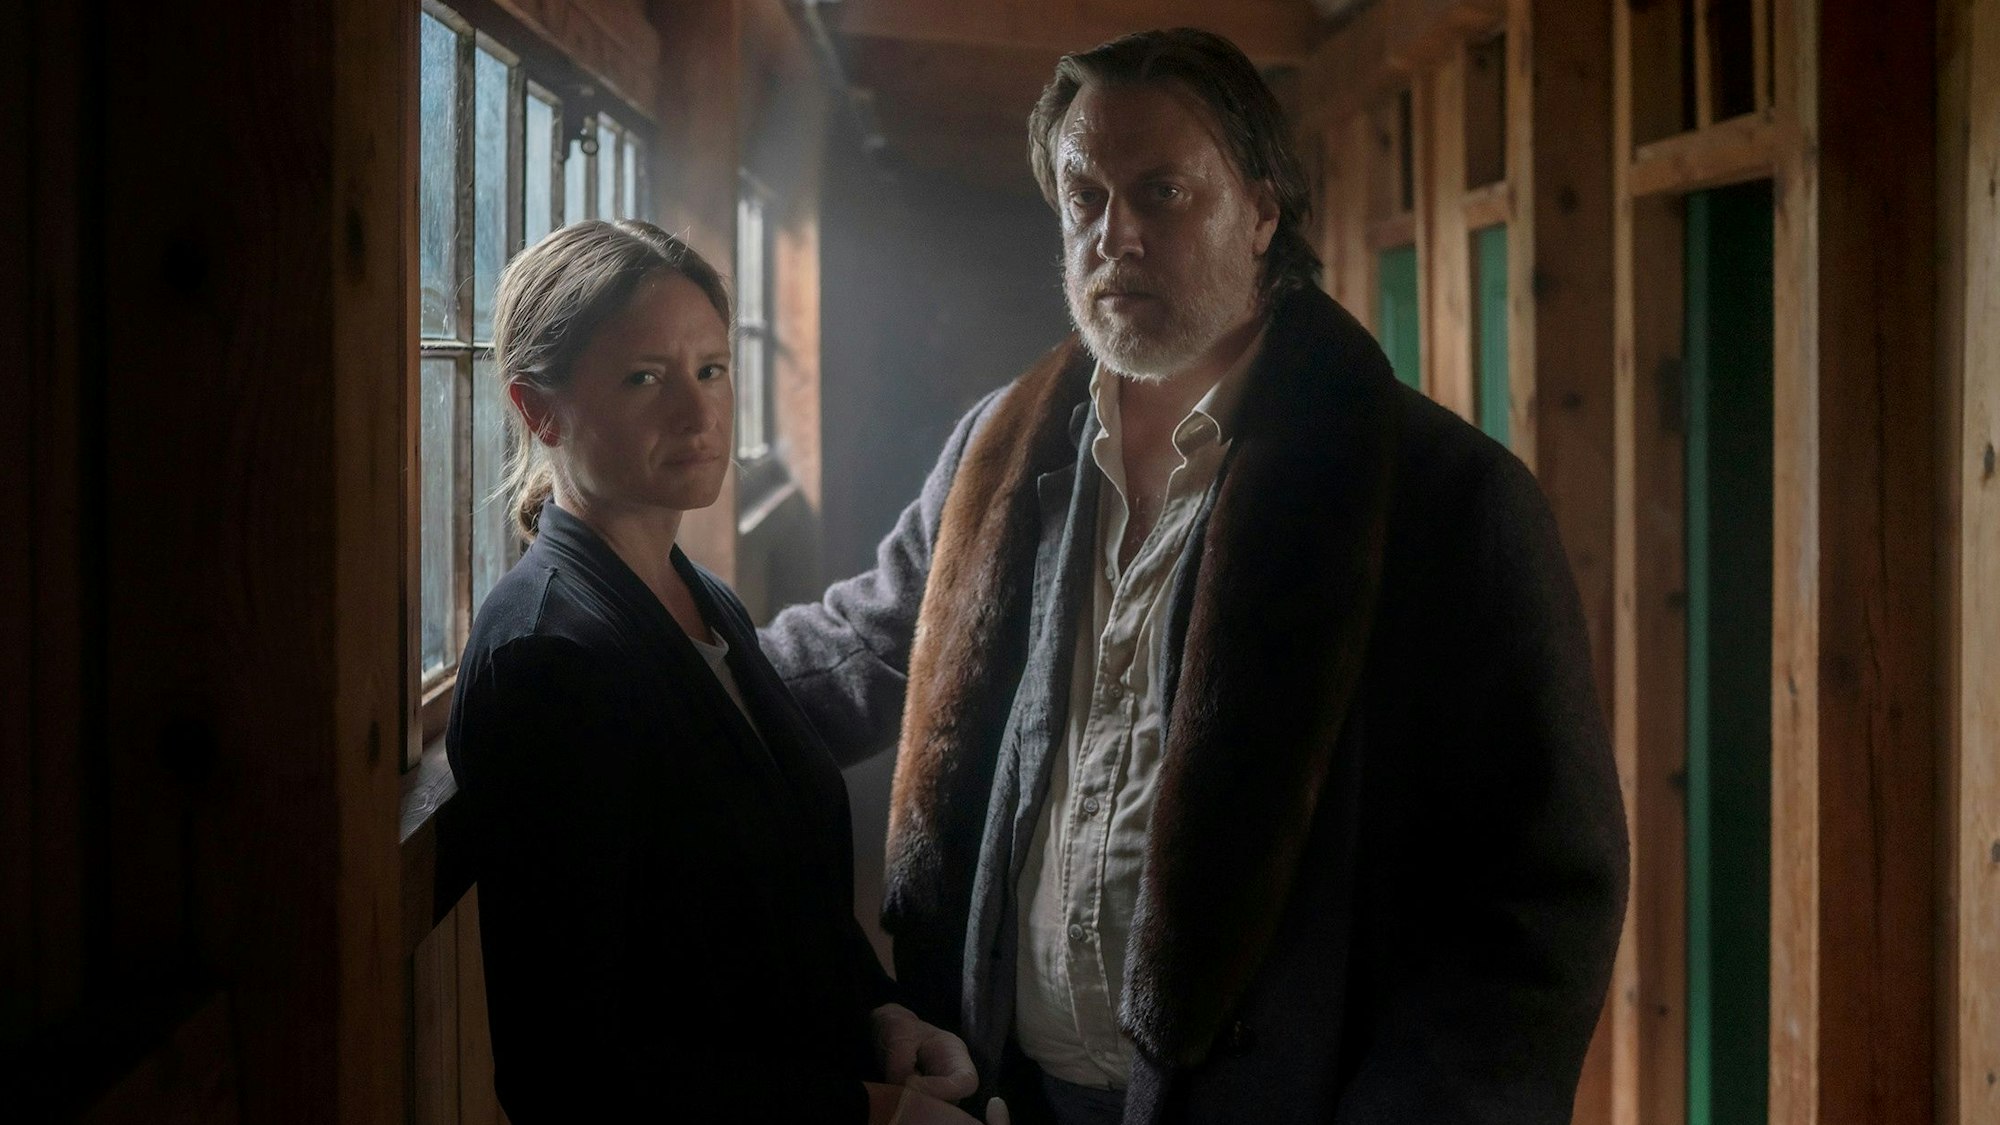 Ellie Stocker (Julia Jentsch) und Gedeon Winter (Nicholas Ofczarek) stehen in einem lichtdurchfluteten Raum.